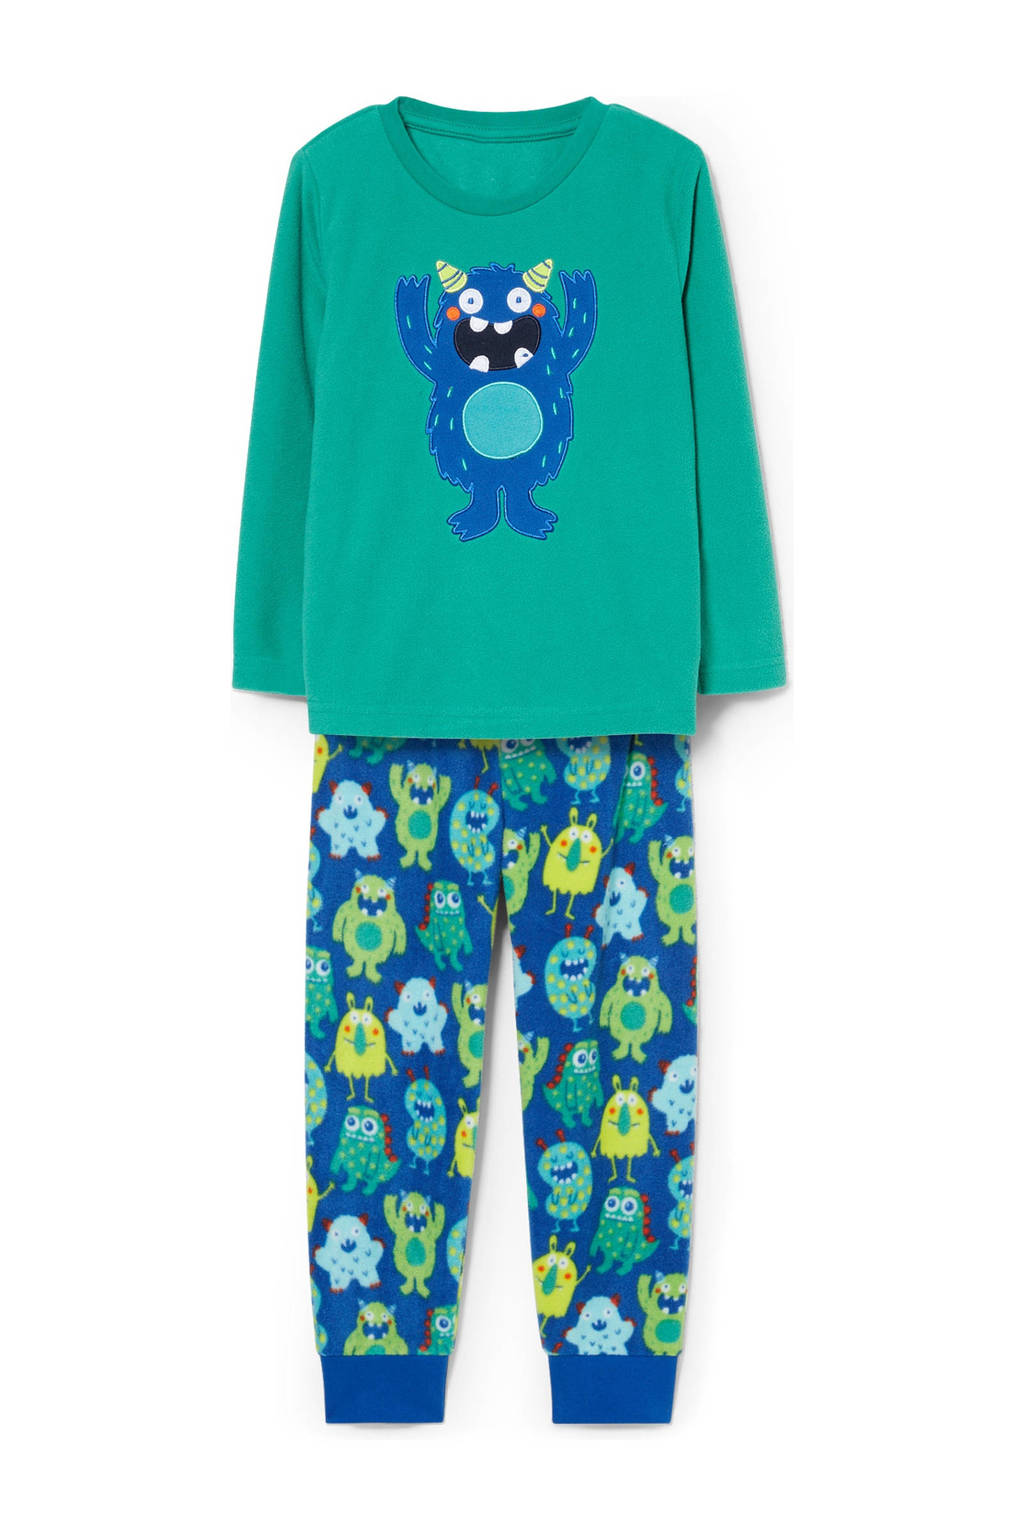 C&A   pyjama met all over print groen/blauw, Groen/blauw